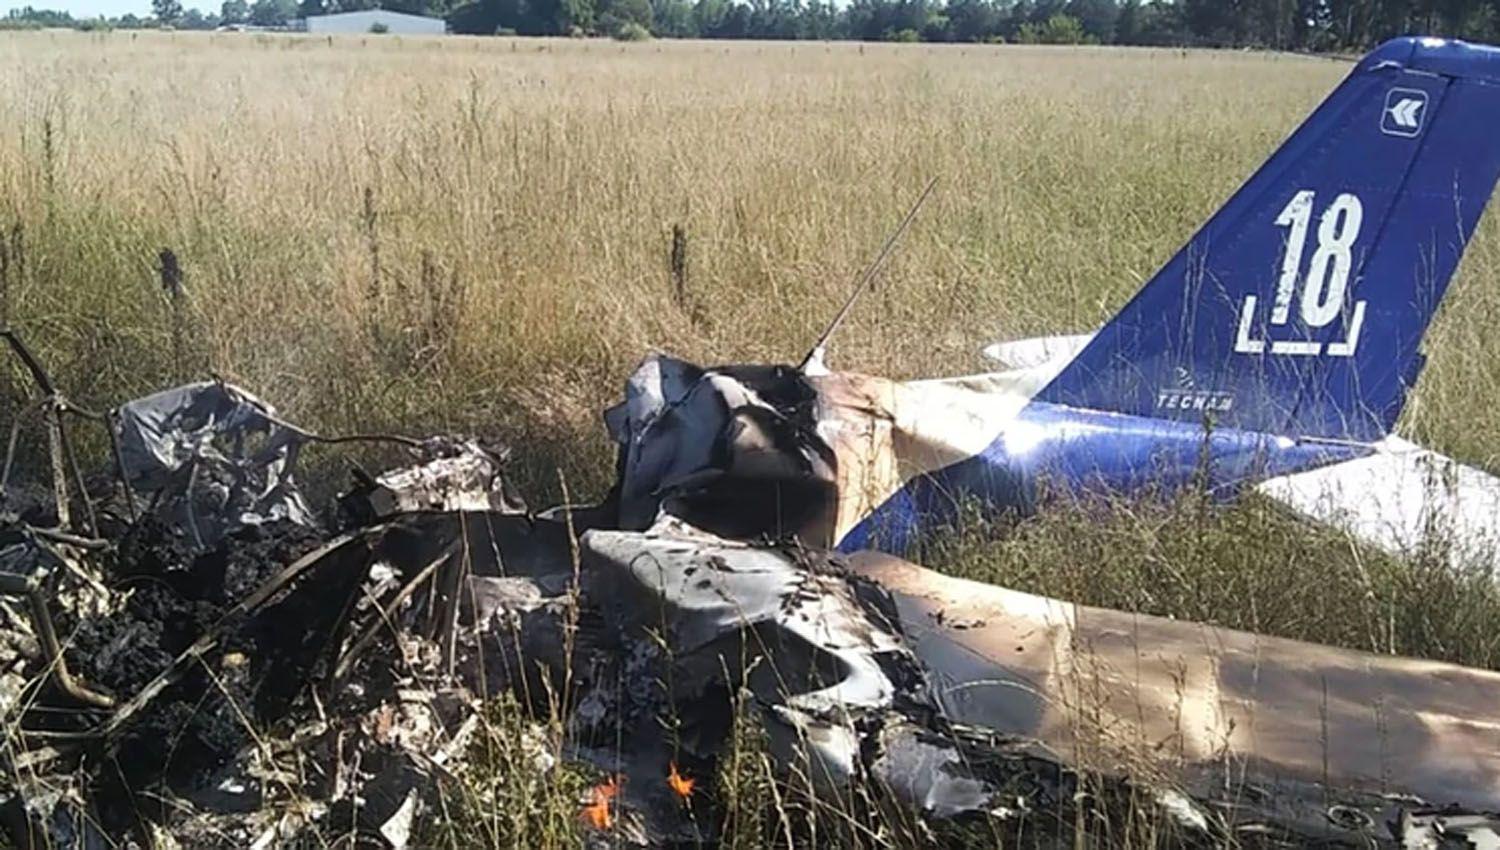 La caída de la avioneta ocasionó el deceso de las dos personas que iban a bordo